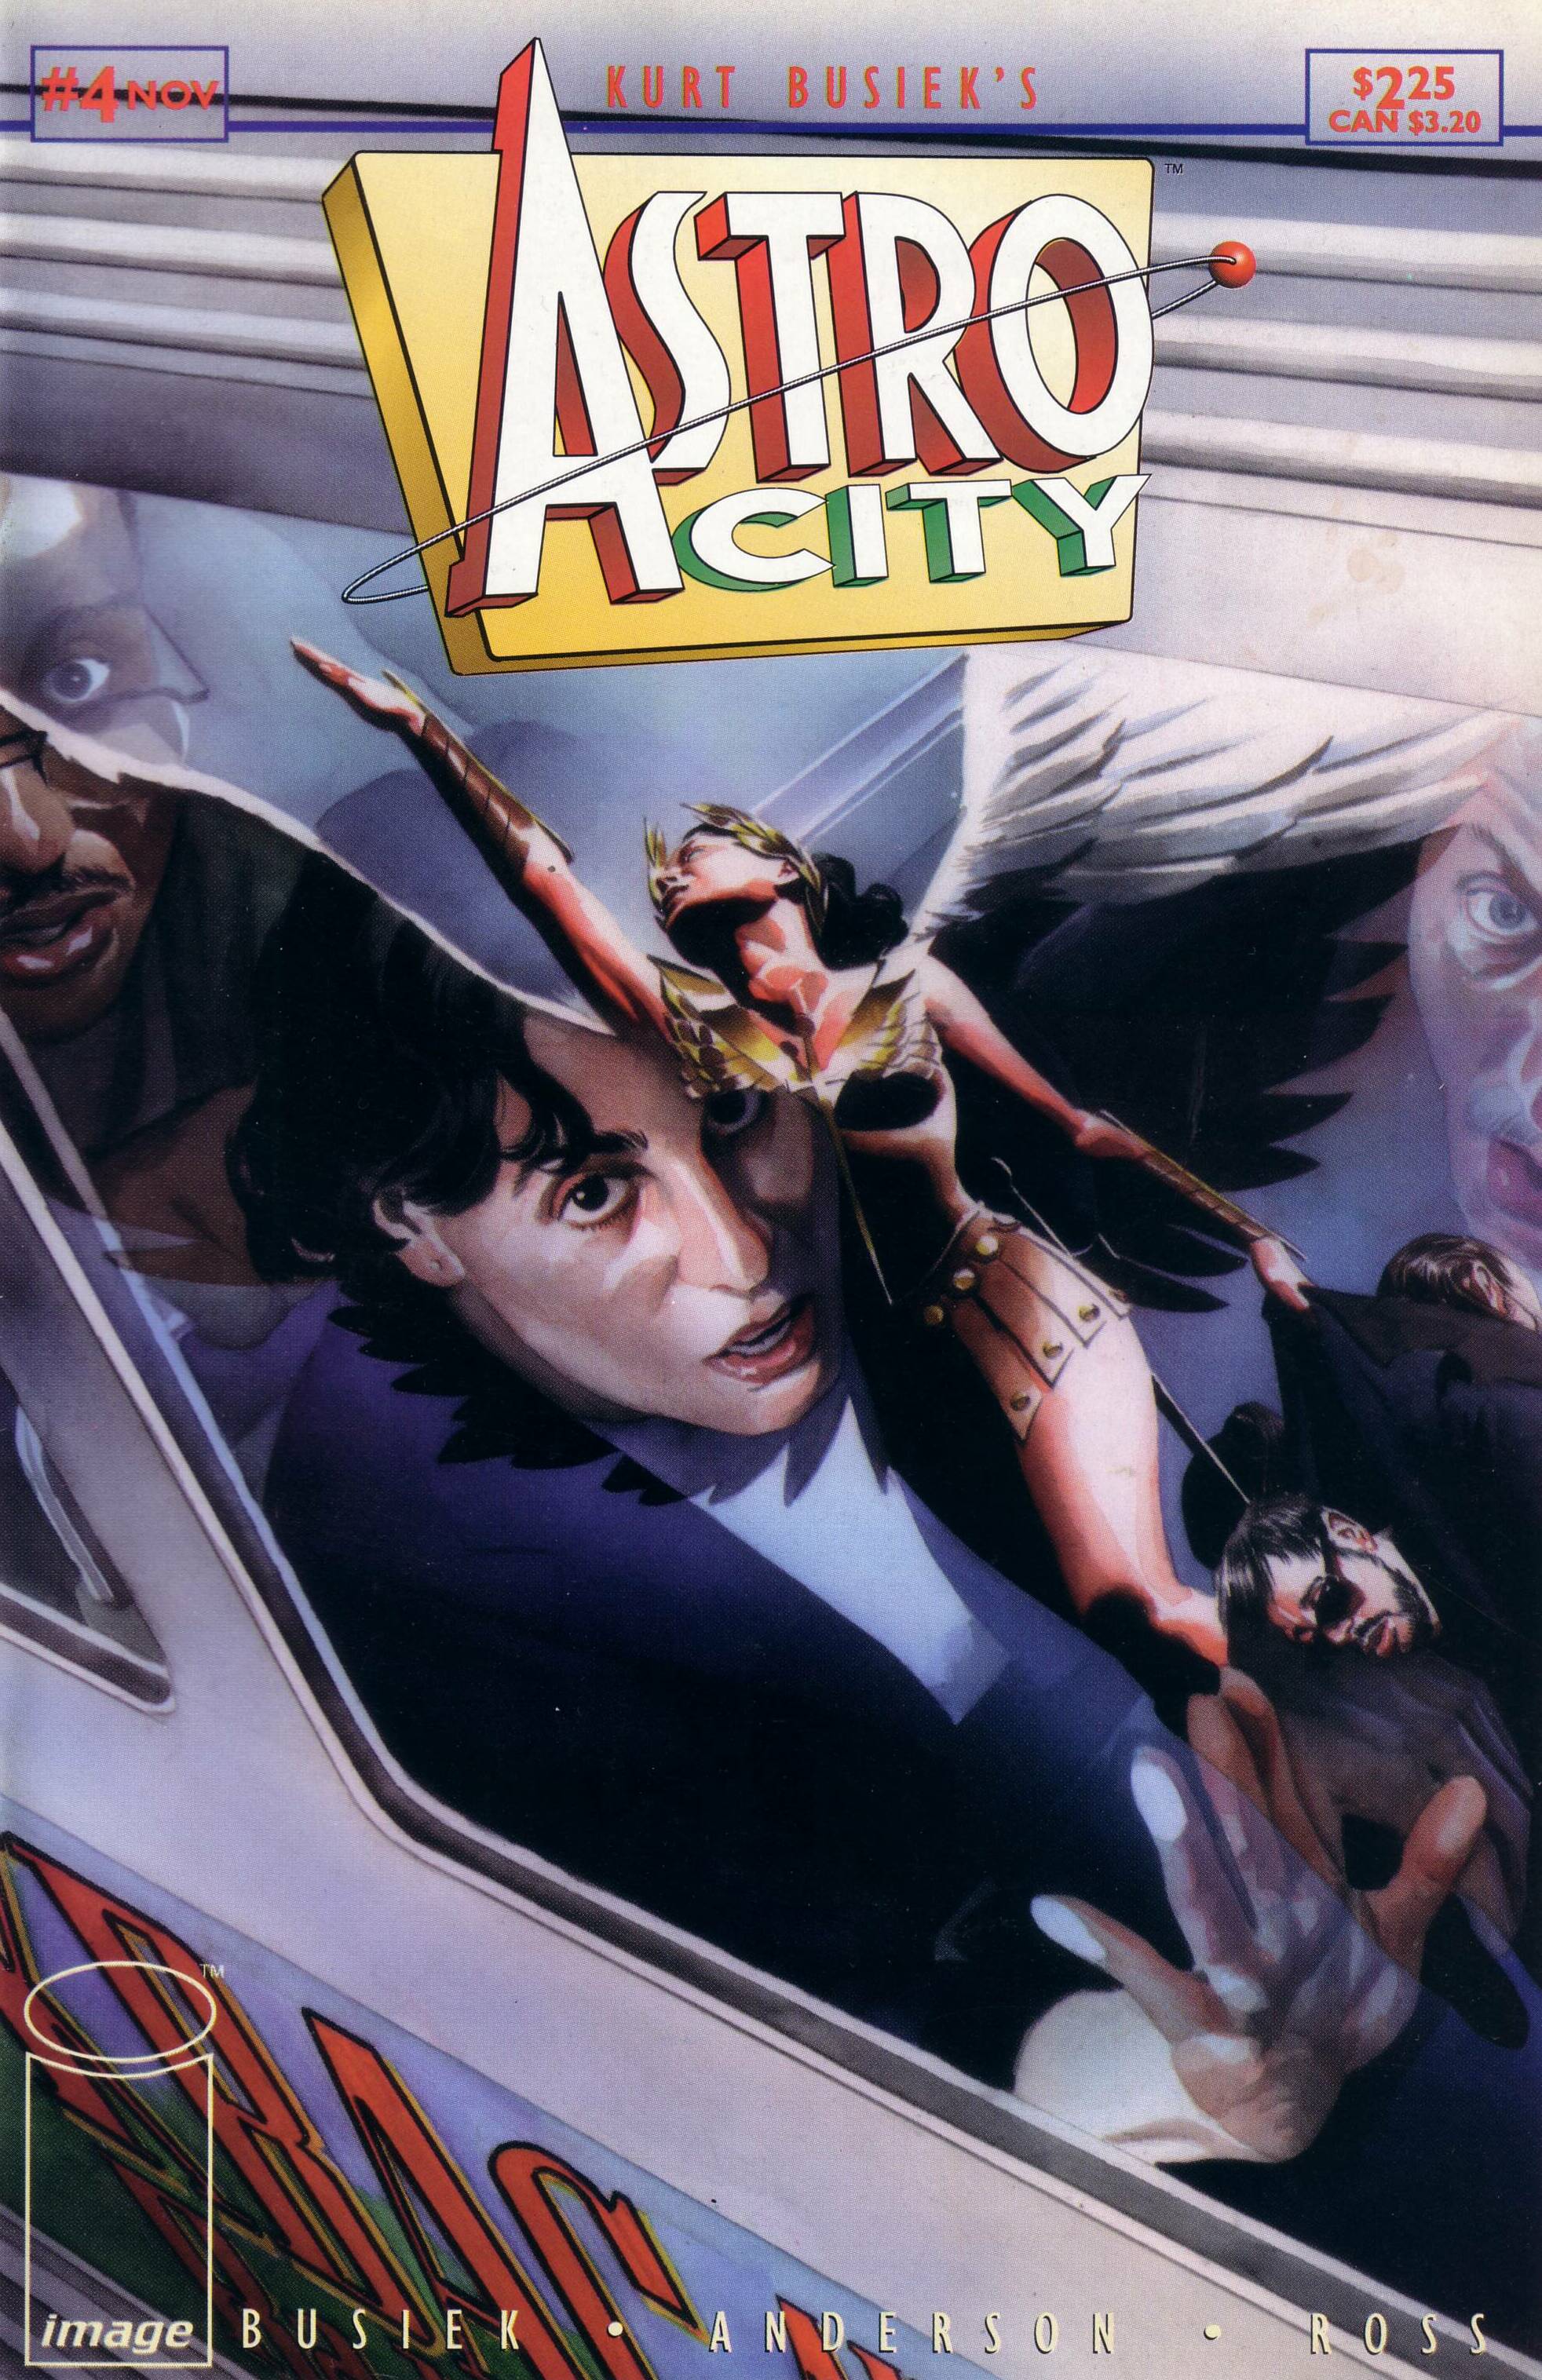 Astro City #5